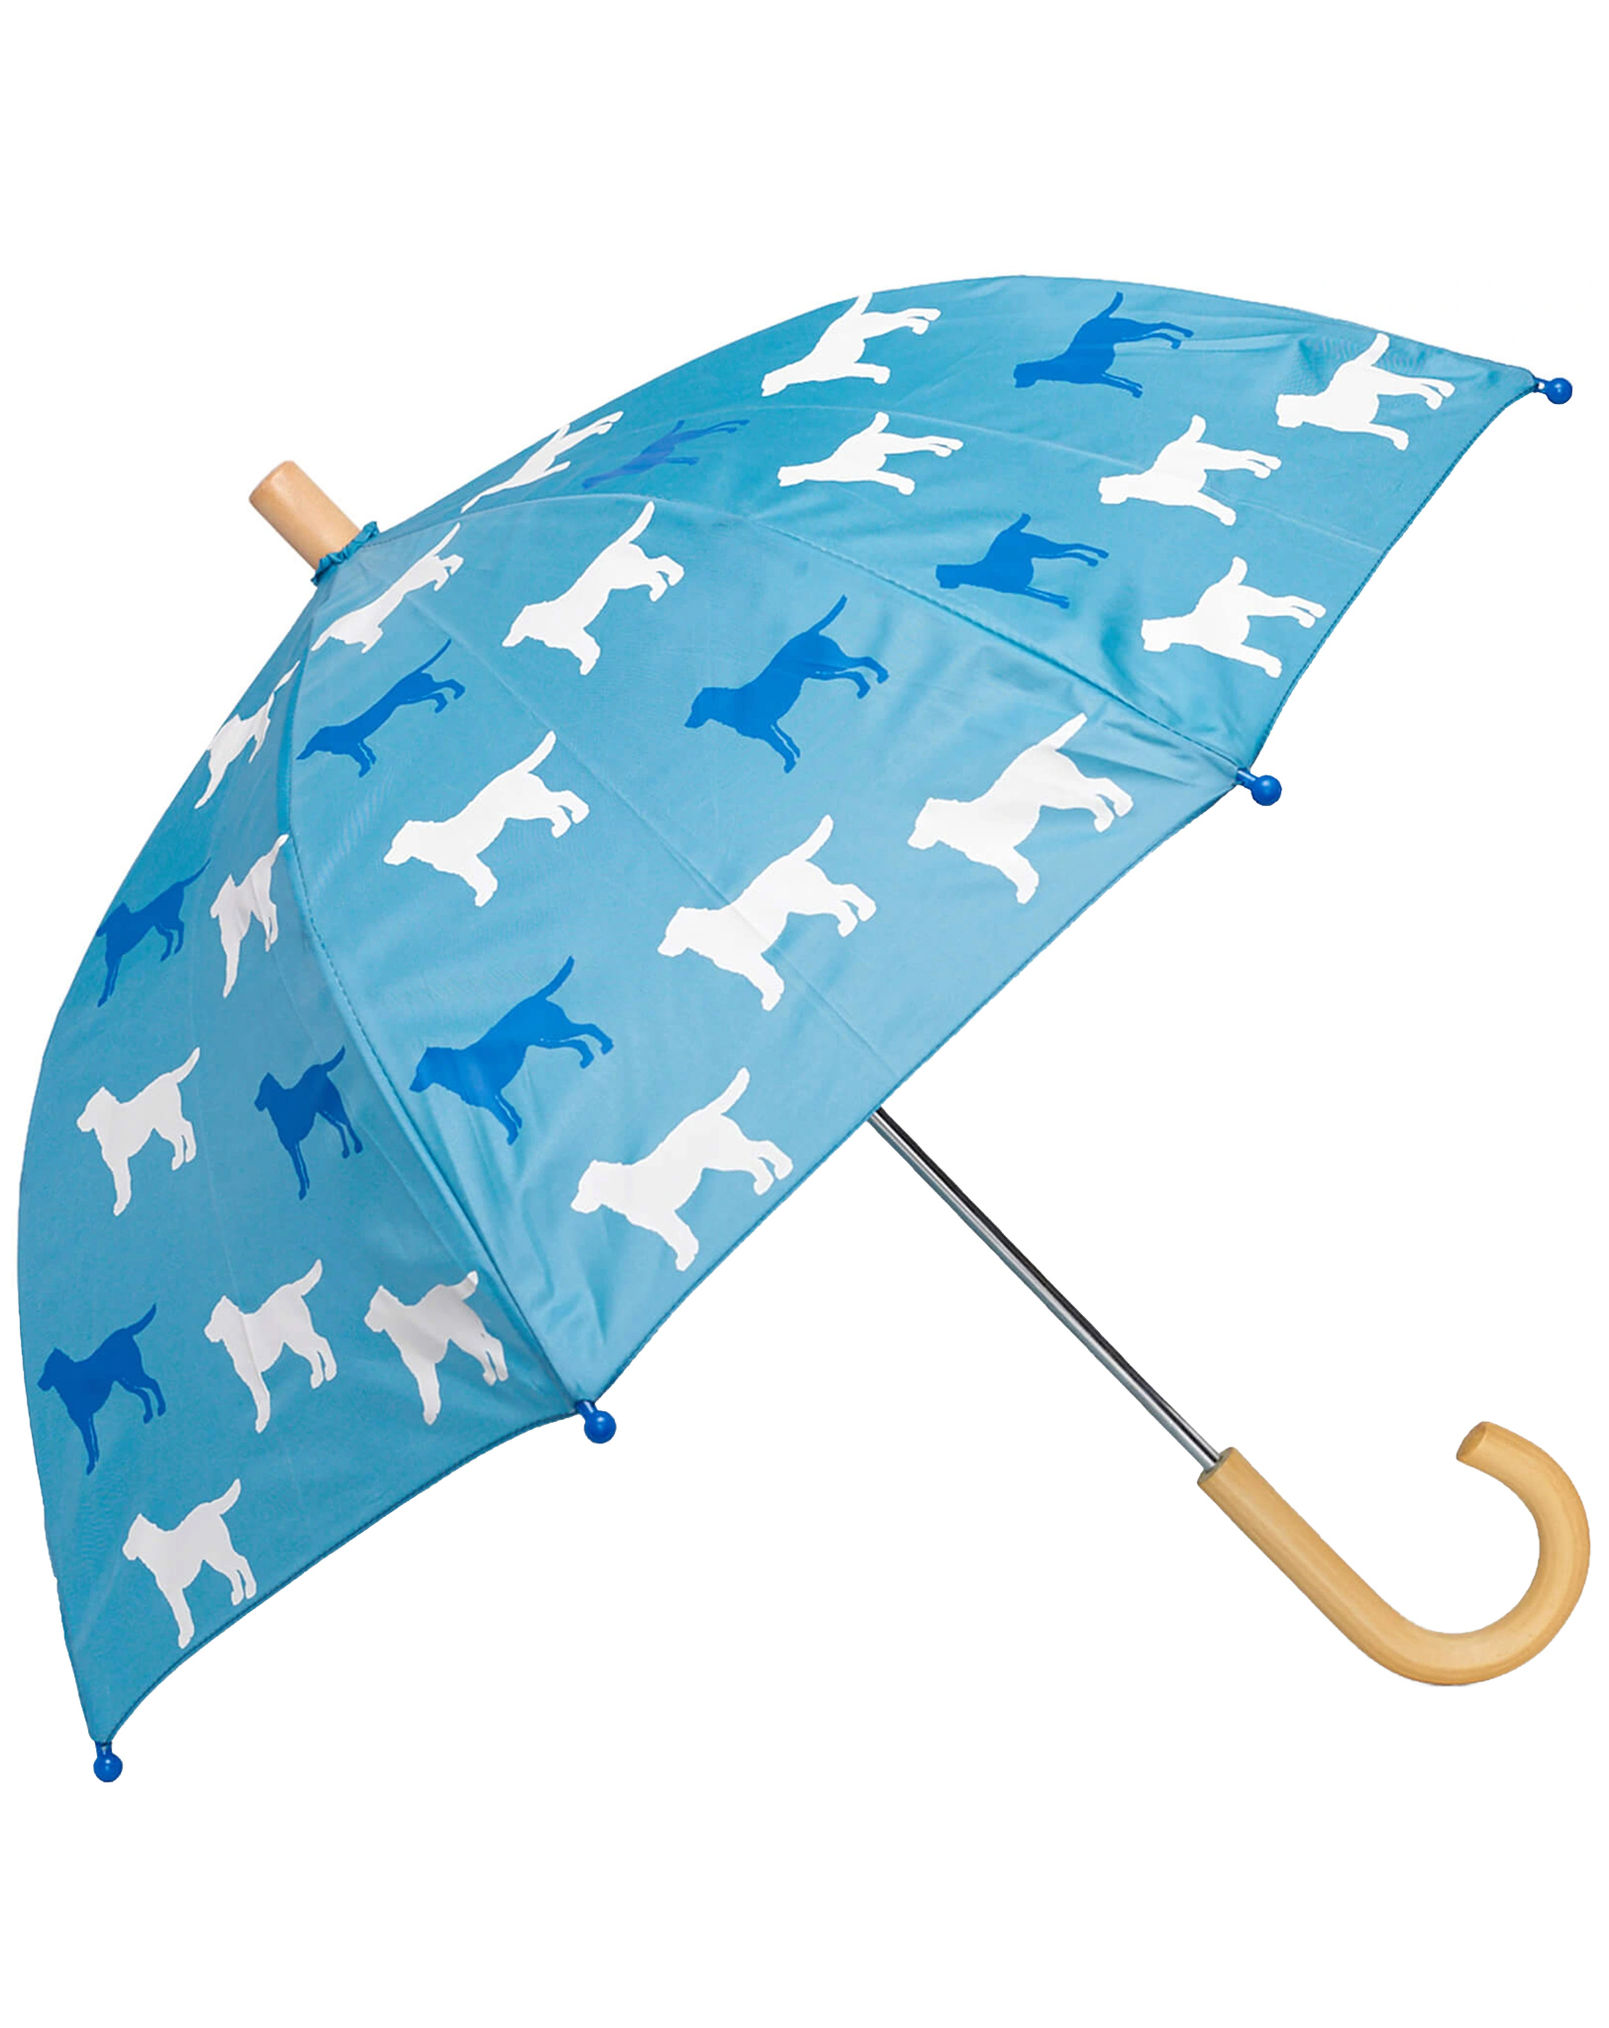 Regenschirm COLOUR CHANGING – FRIENDLY LABS in blau kaufen